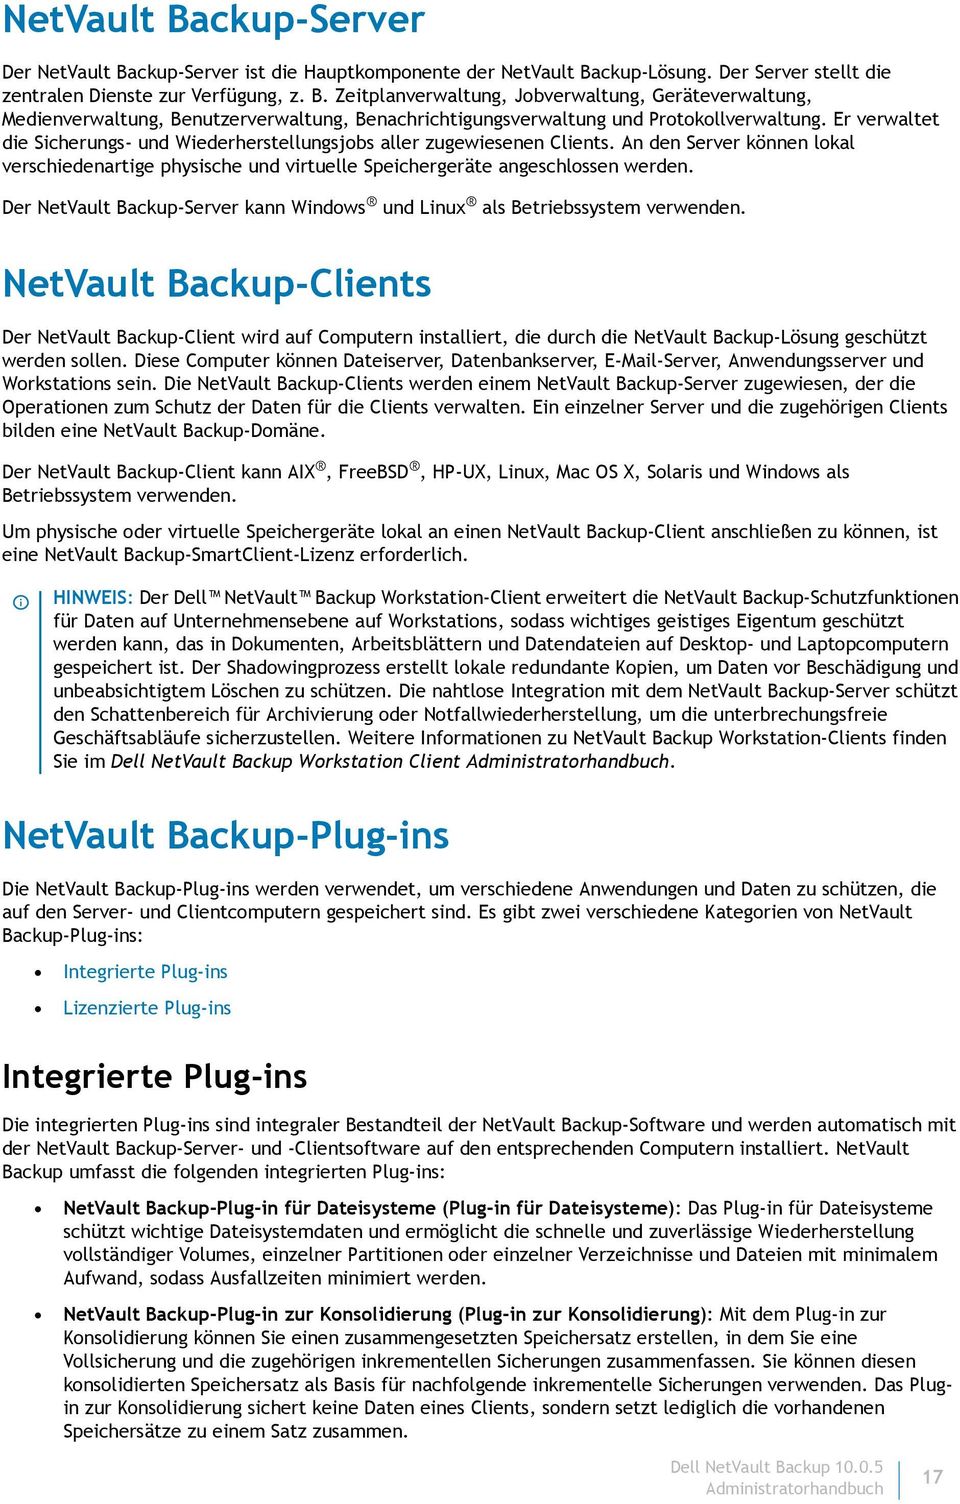 Der NetVault Backup-Server kann Windows und Linux als Betriebssystem verwenden.